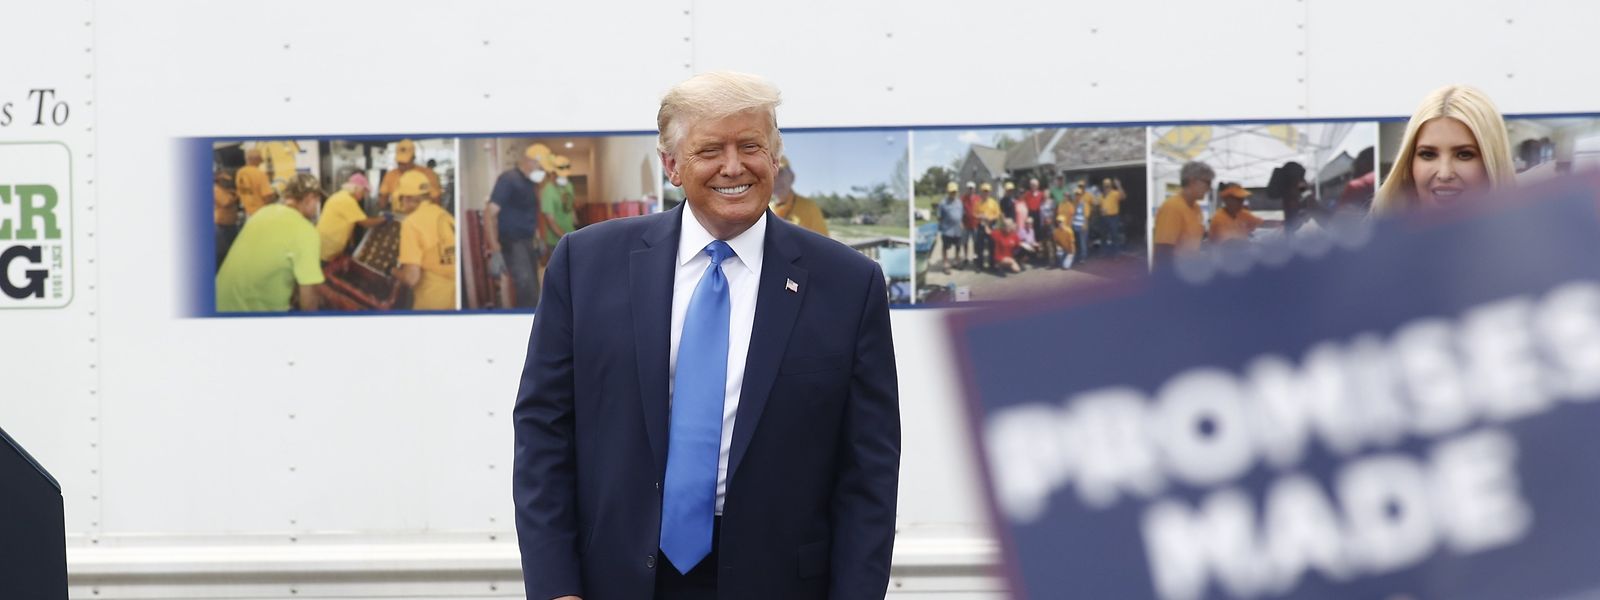 Selon son équipe de campagne, Donald Trump souhaite une convention «très optimiste et gaie». Le rassemblement des Républicains s'achèvera jeudi.